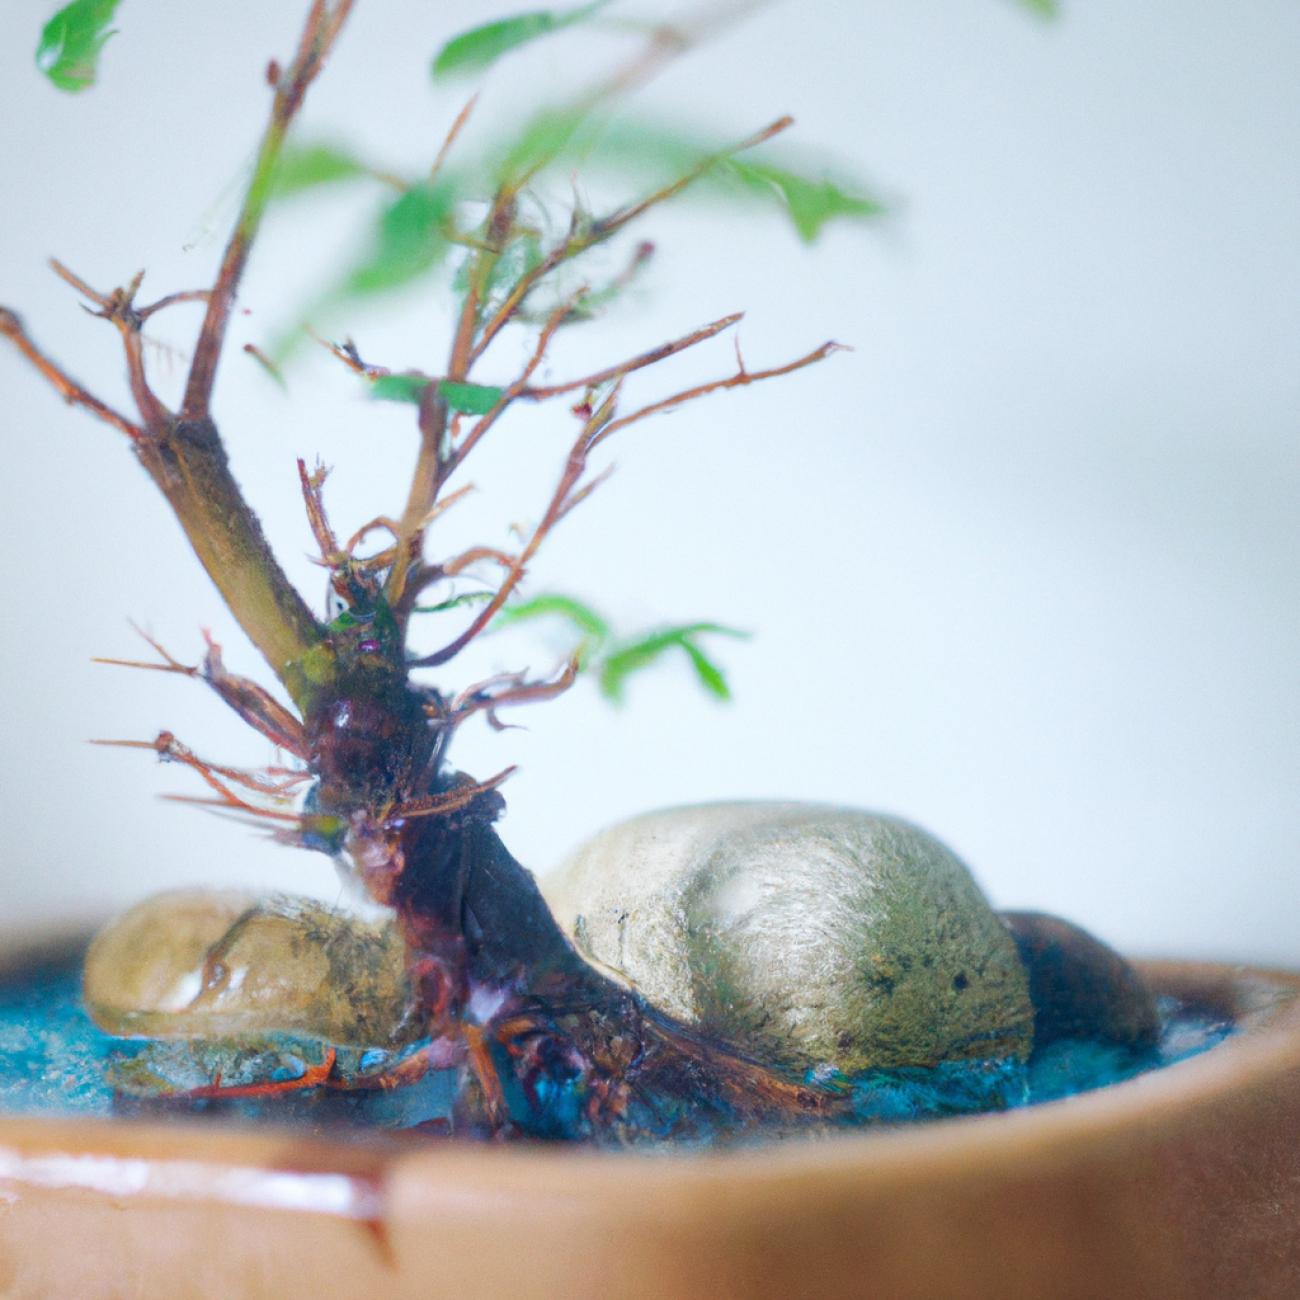 2. Jak správně umístit​ bonsaje do akvária pro optimální růst a vzhled?